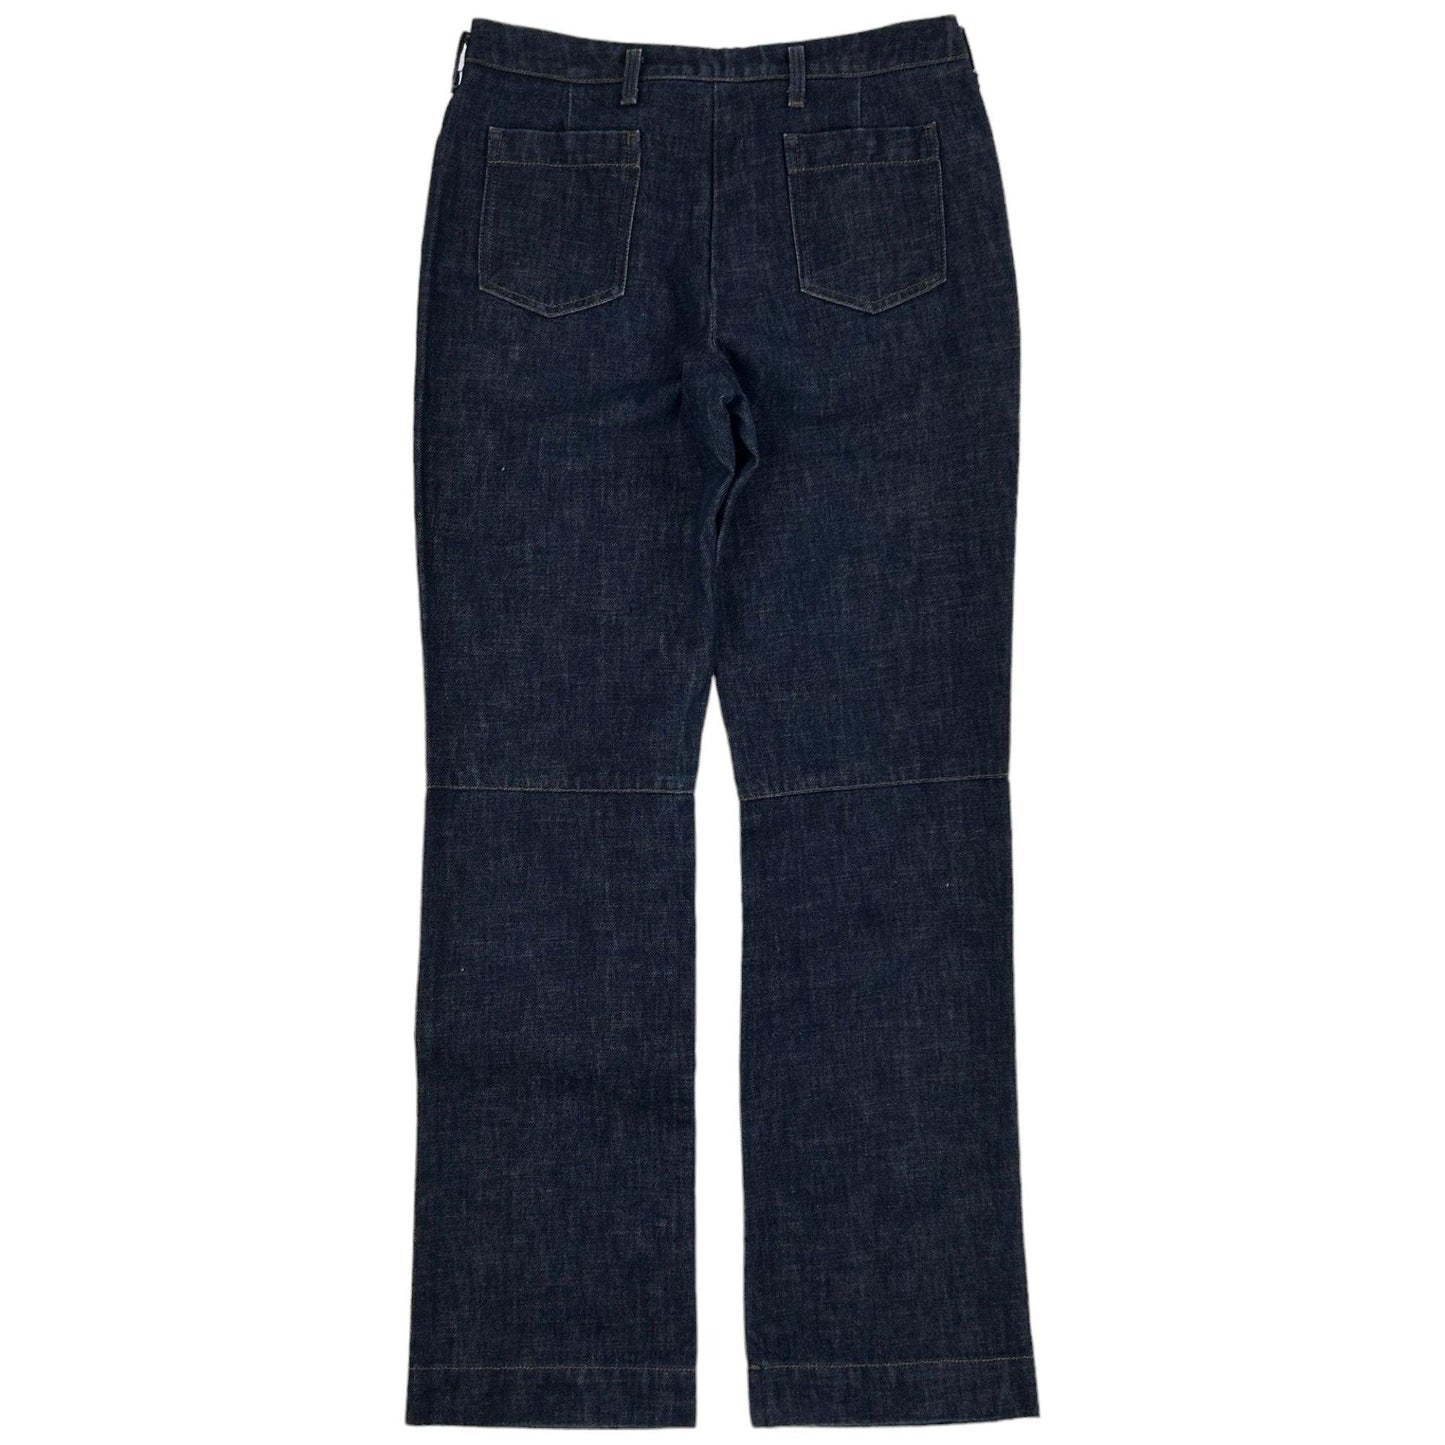 Vintage Prada Sport Denim Jeans Size W28 - Known Source